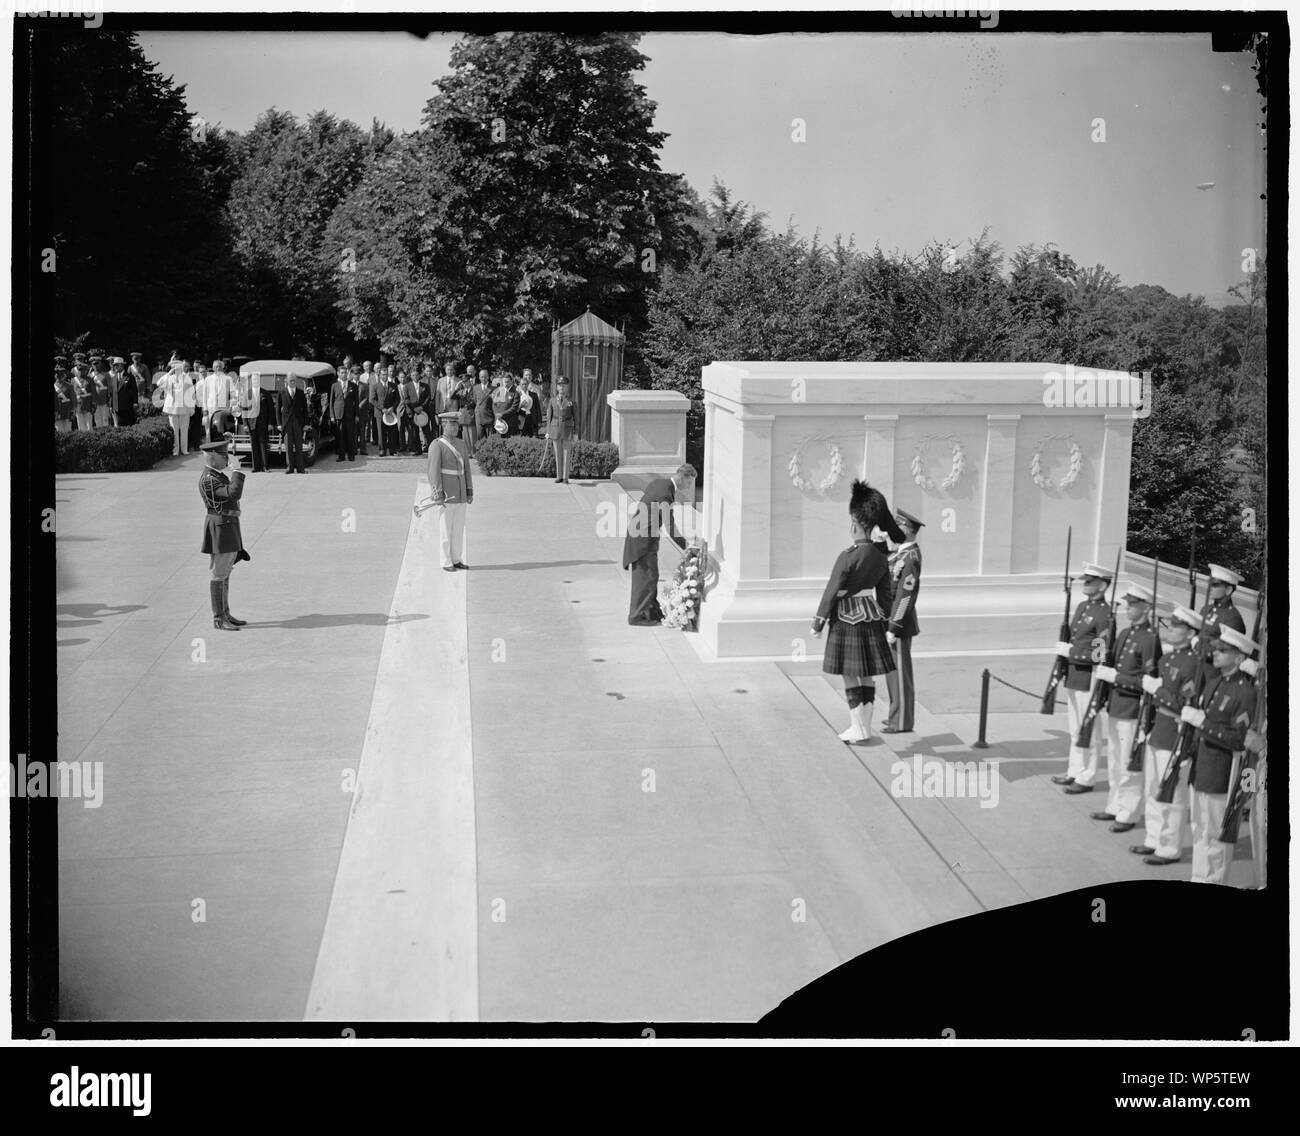 King George VI della Gran Bretagna la posa di corona sulla tomba di un soldato sconosciuto, durante la sua visita reale a Washington D.C. Foto Stock